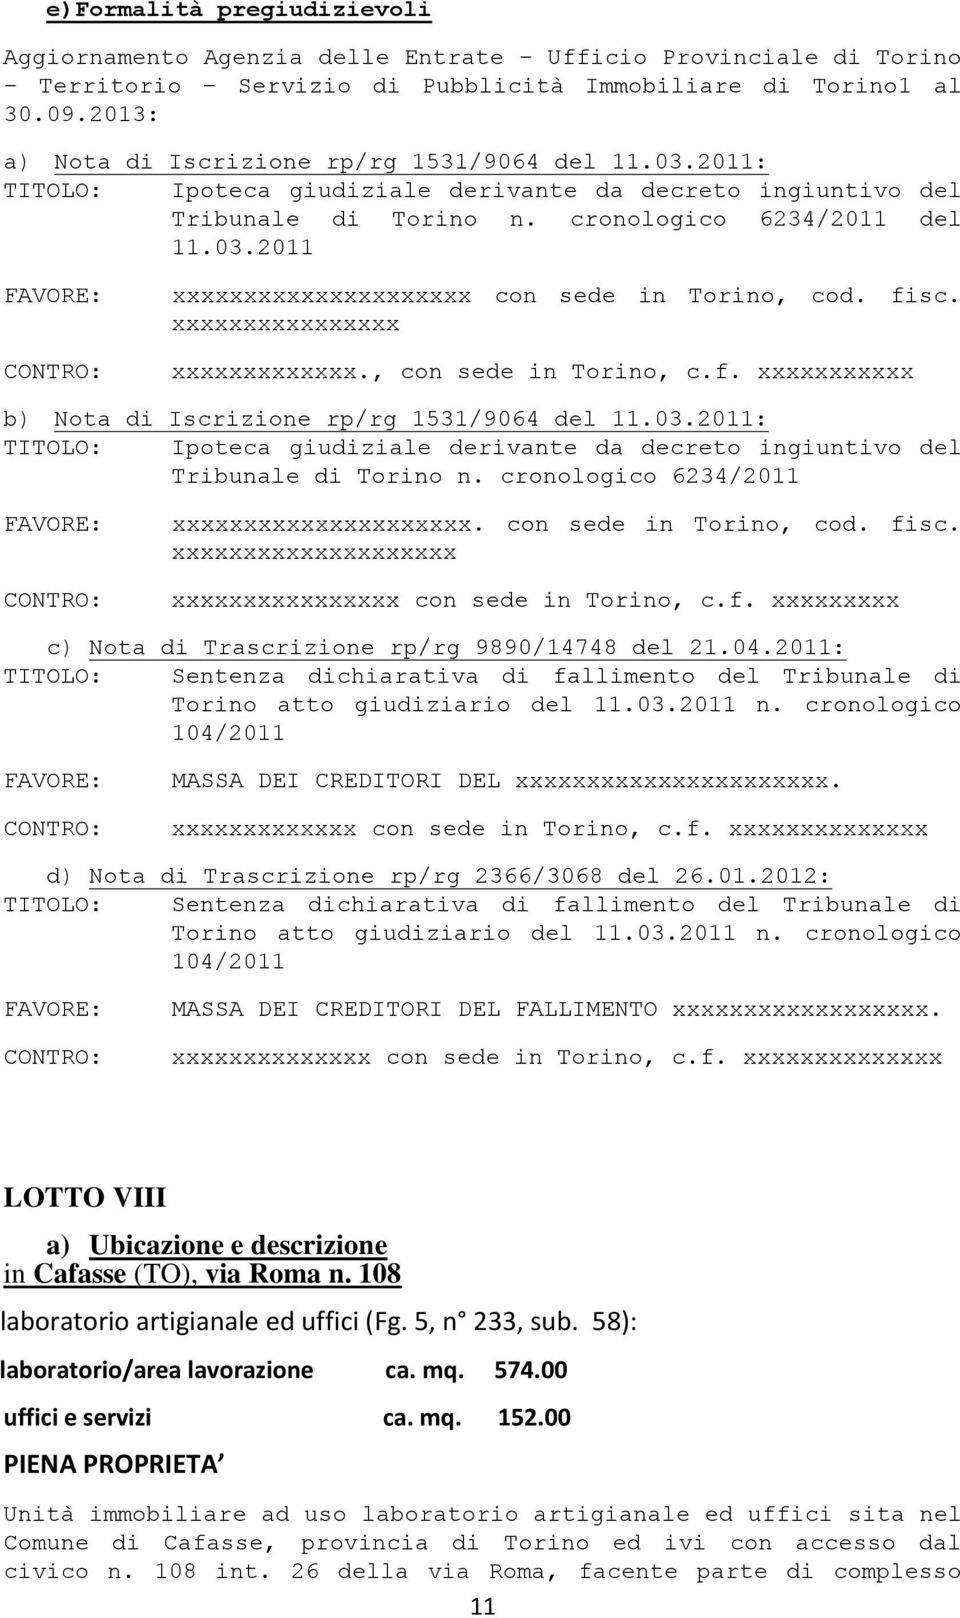 xxxxxxxxxxxxxxxx xxxxxxxxxxxxx., con sede in Torino, c.f. xxxxxxxxxxx b) Nota di Iscrizione rp/rg 1531/9064 del 11.03.2011: Tribunale di Torino n. cronologico 6234/2011 xxxxxxxxxxxxxxxxxxxxx.